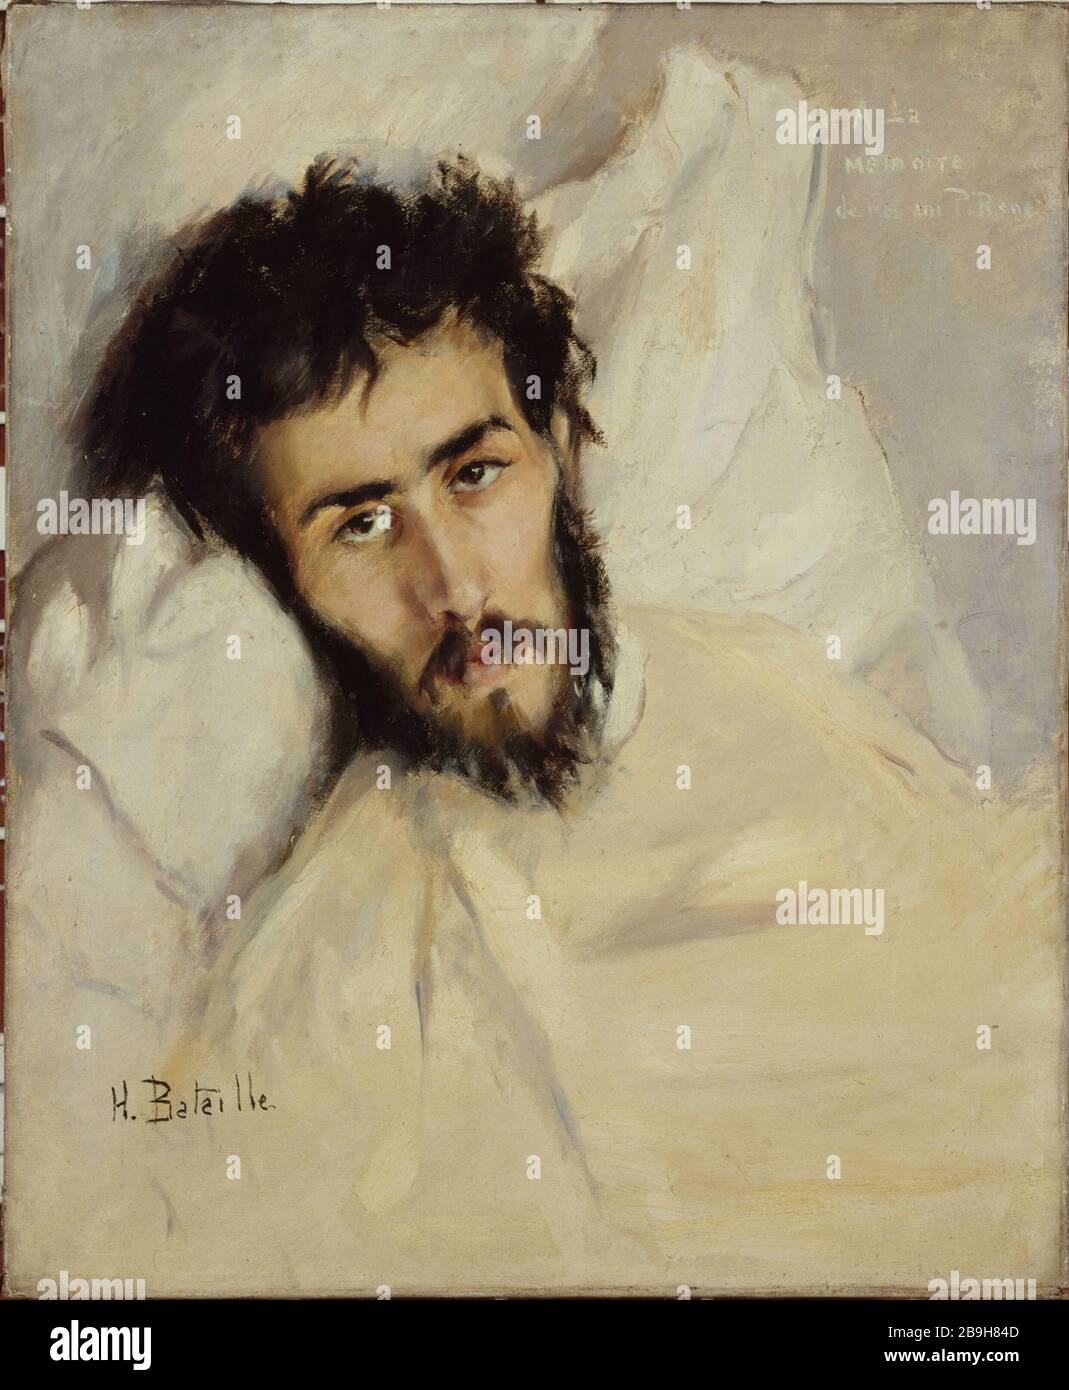 Portrait of sick man (P. René?) Henry Bataille (1872-1922). 'Portrait d'homme malade (P. René ?)'. Huile sur toile. Paris, musée Carnavalet. Stock Photo